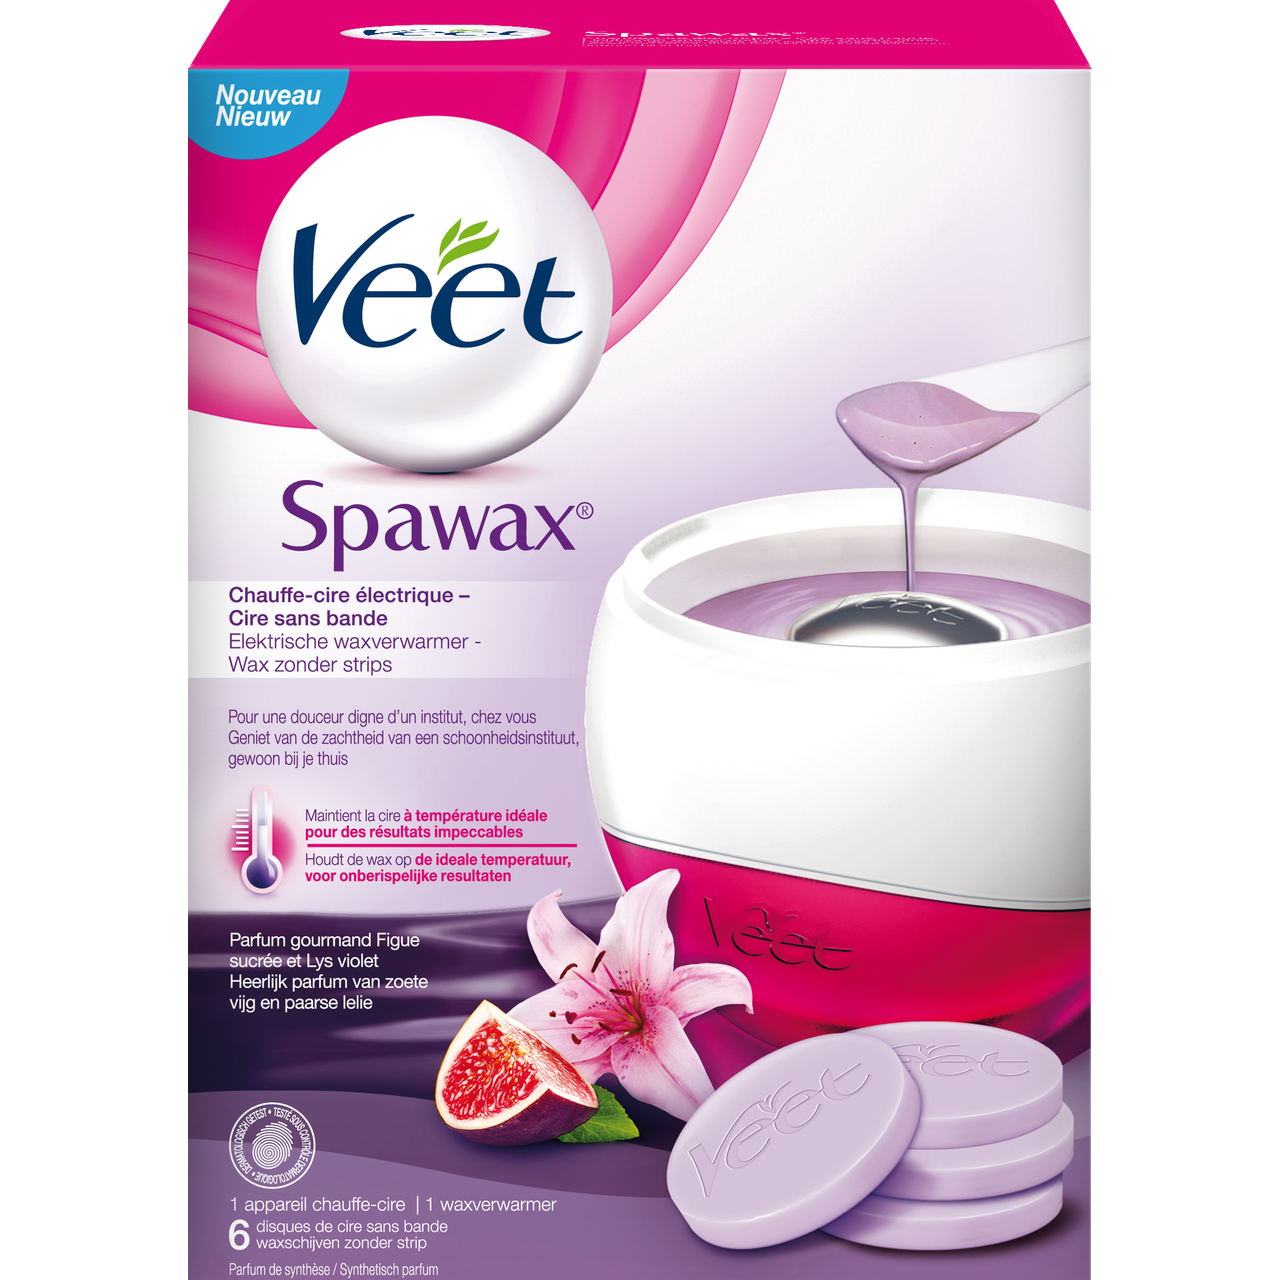 Veet Spawax Elektrische waxverwarmer - Wax zonder strips - Heerlijk van vijg en paarse lelie